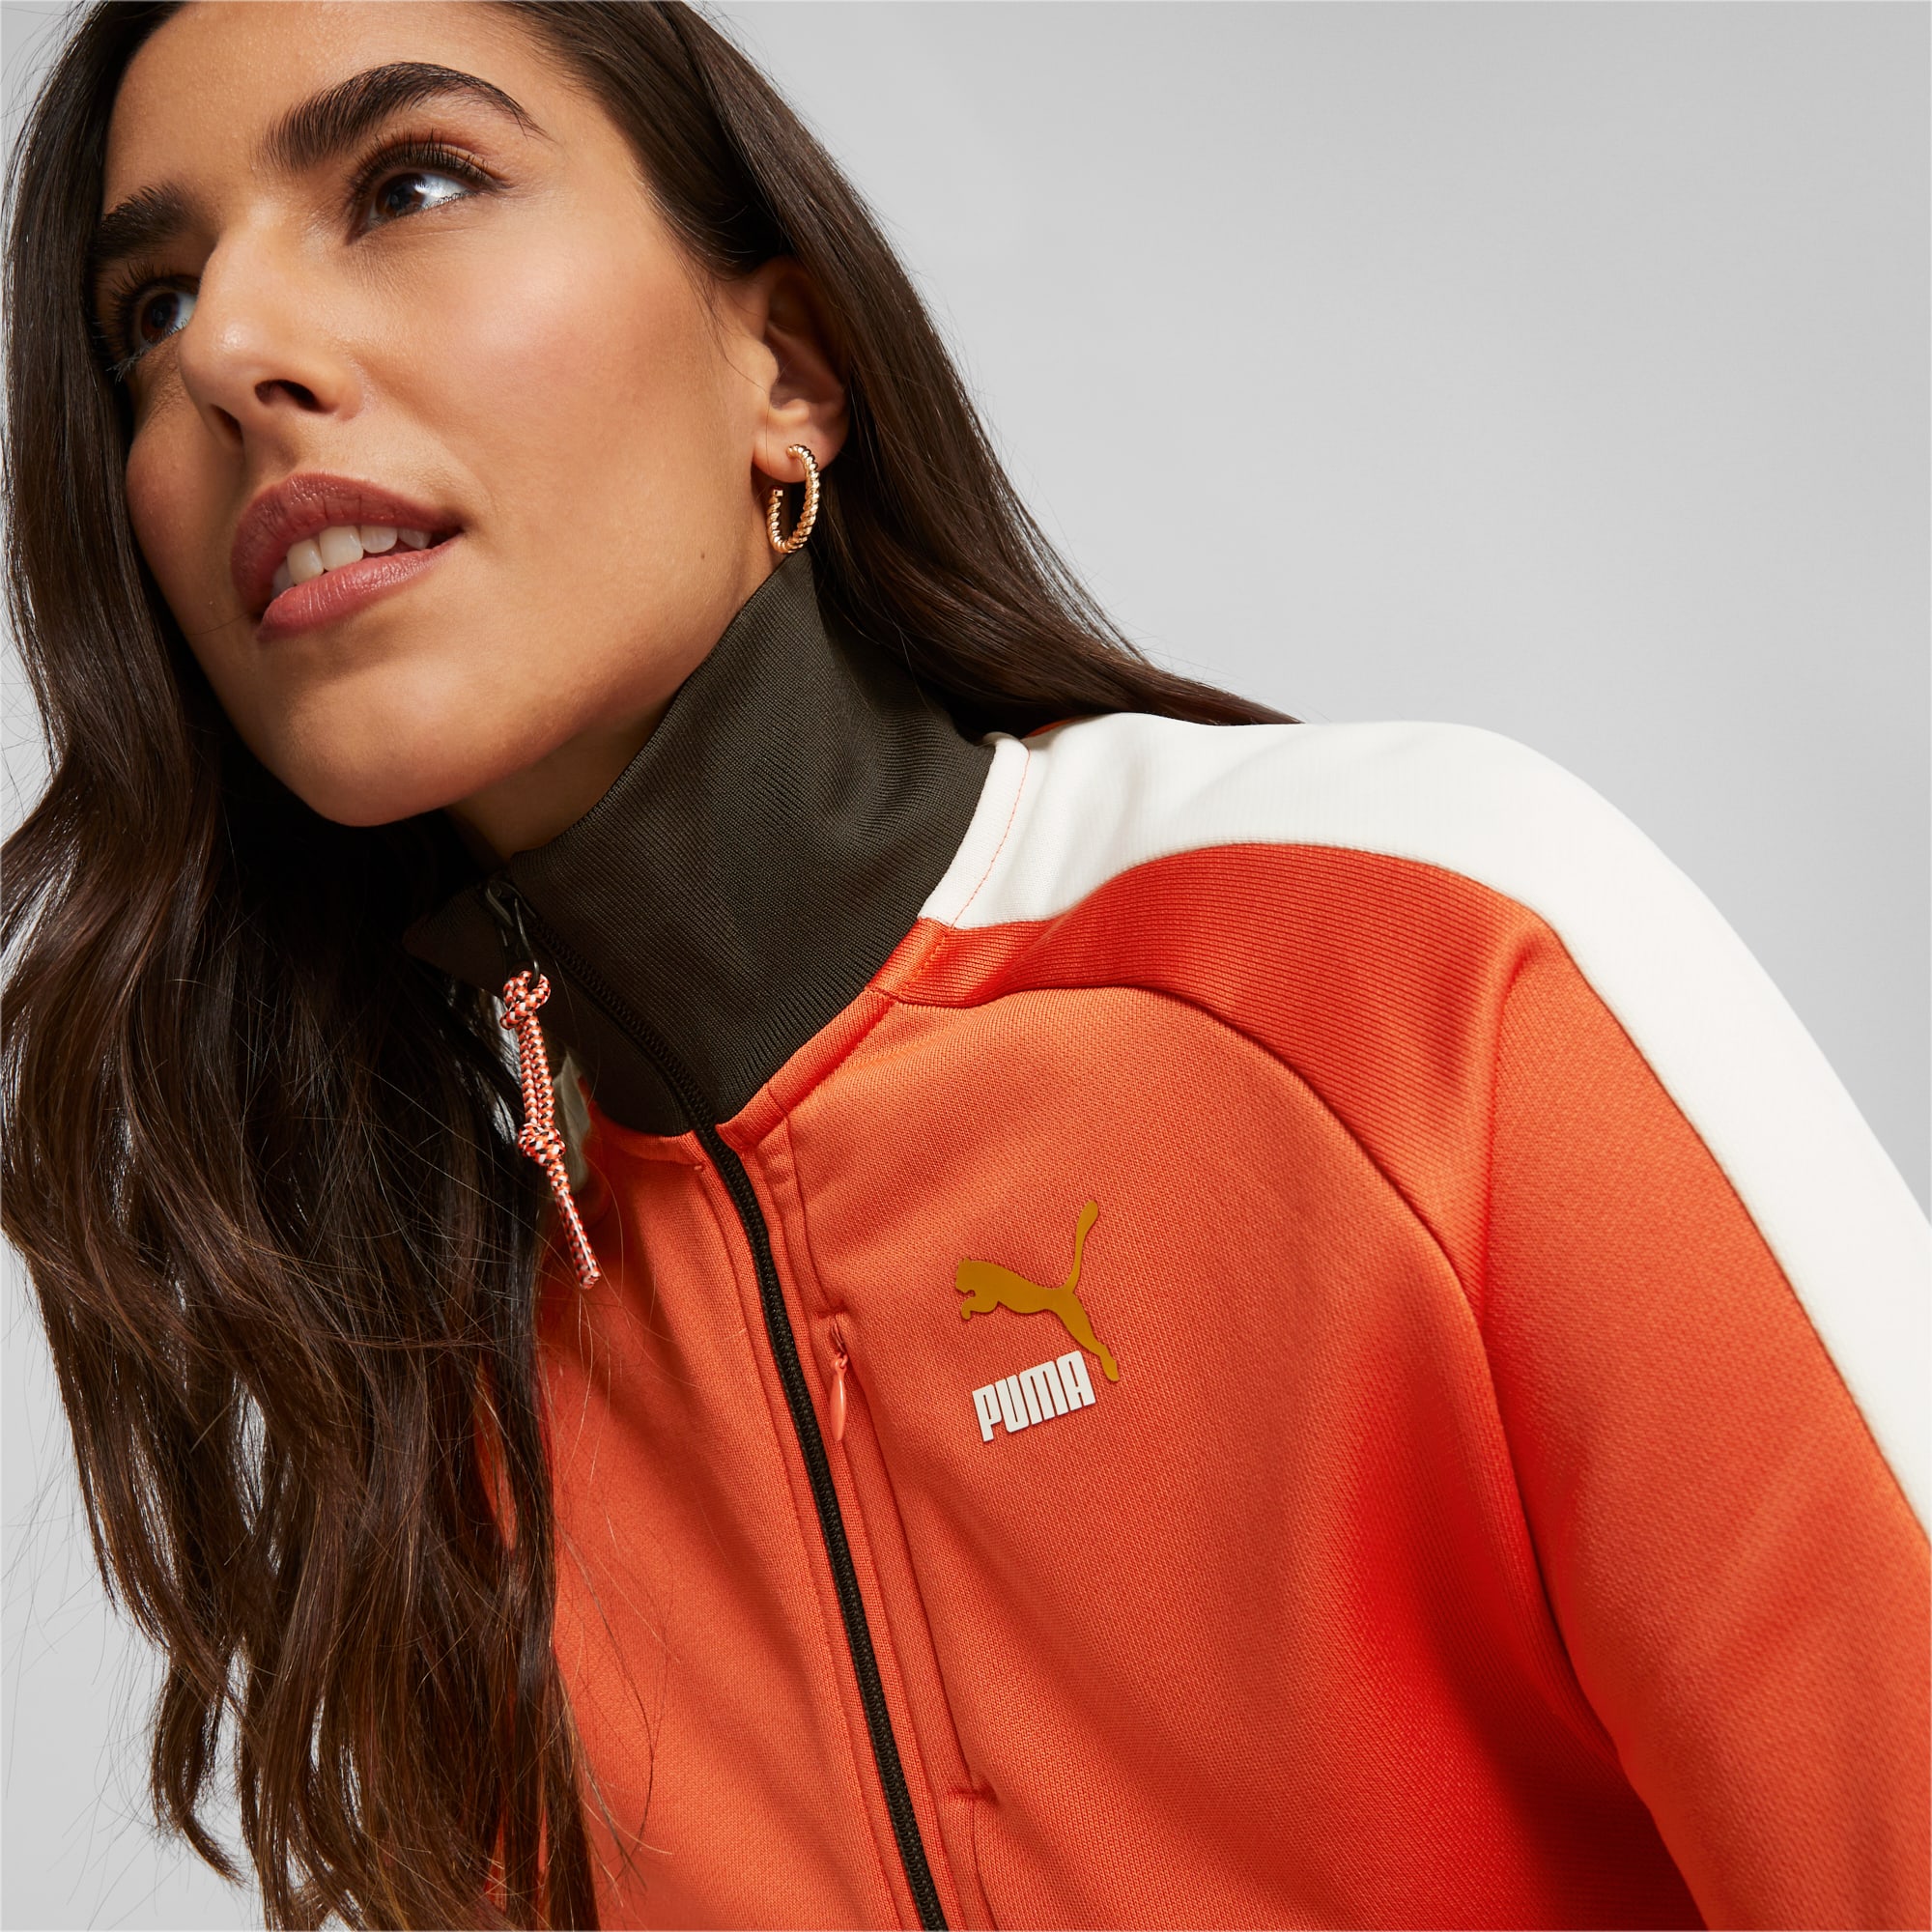 PUMA T7 Women's Track Jacket, Fall Foliage, Size XS, Clothing